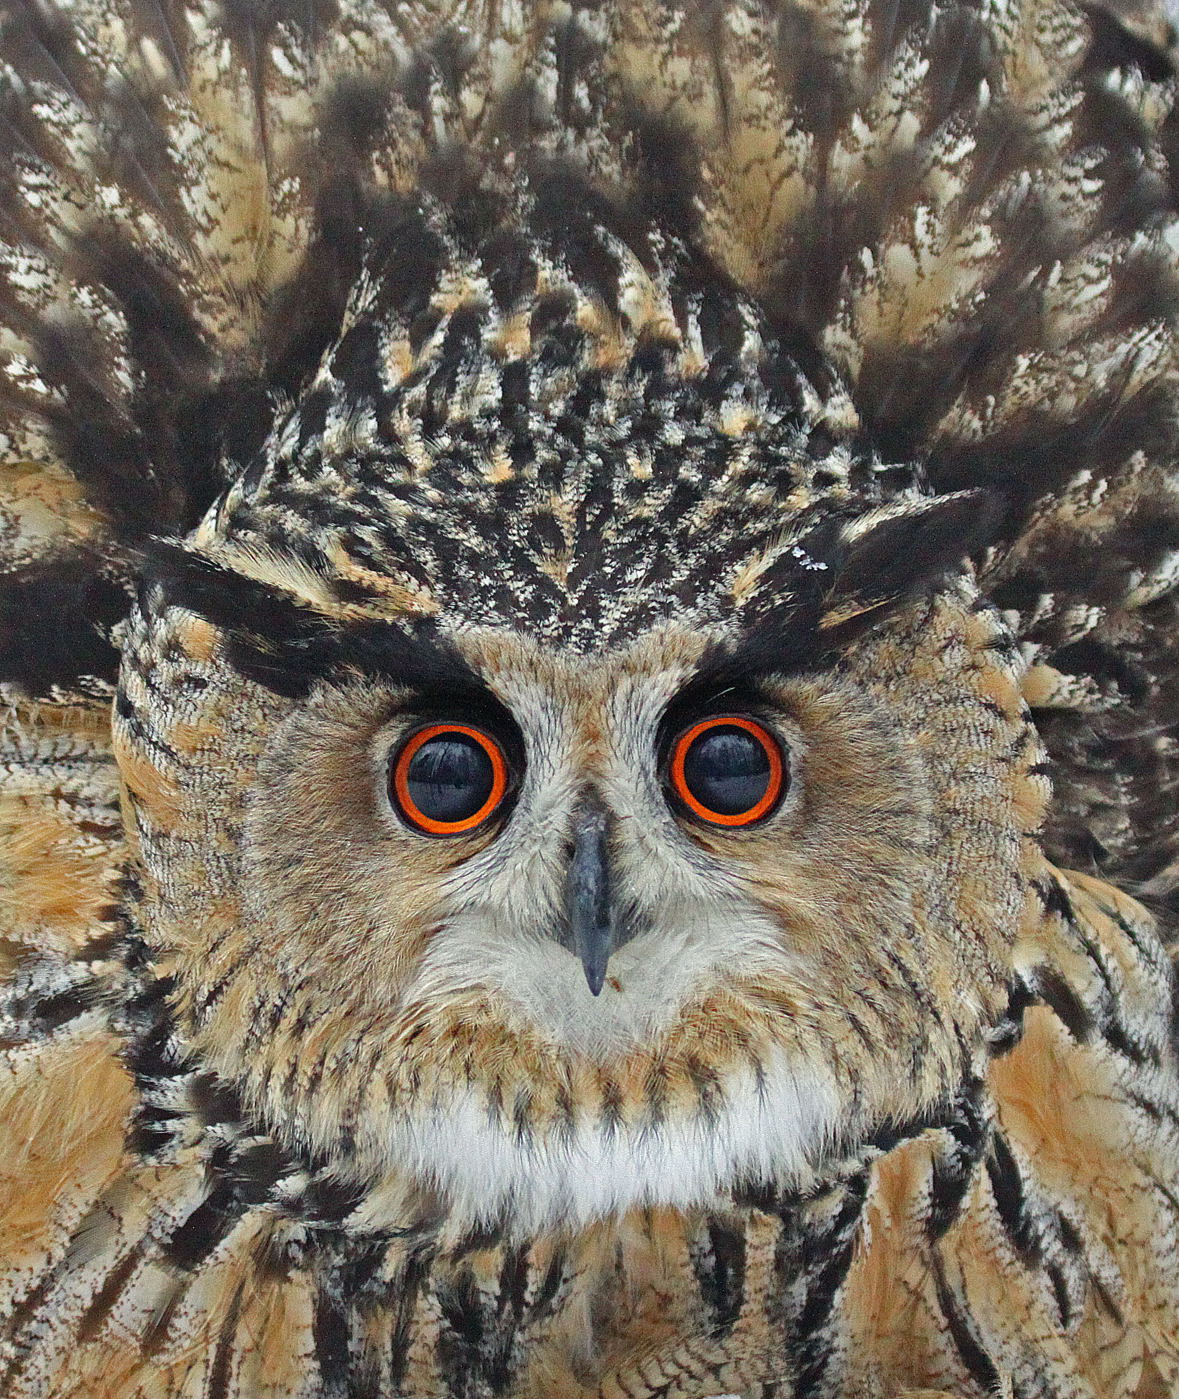 2. Petri Päivärinta "Eagle Owl"